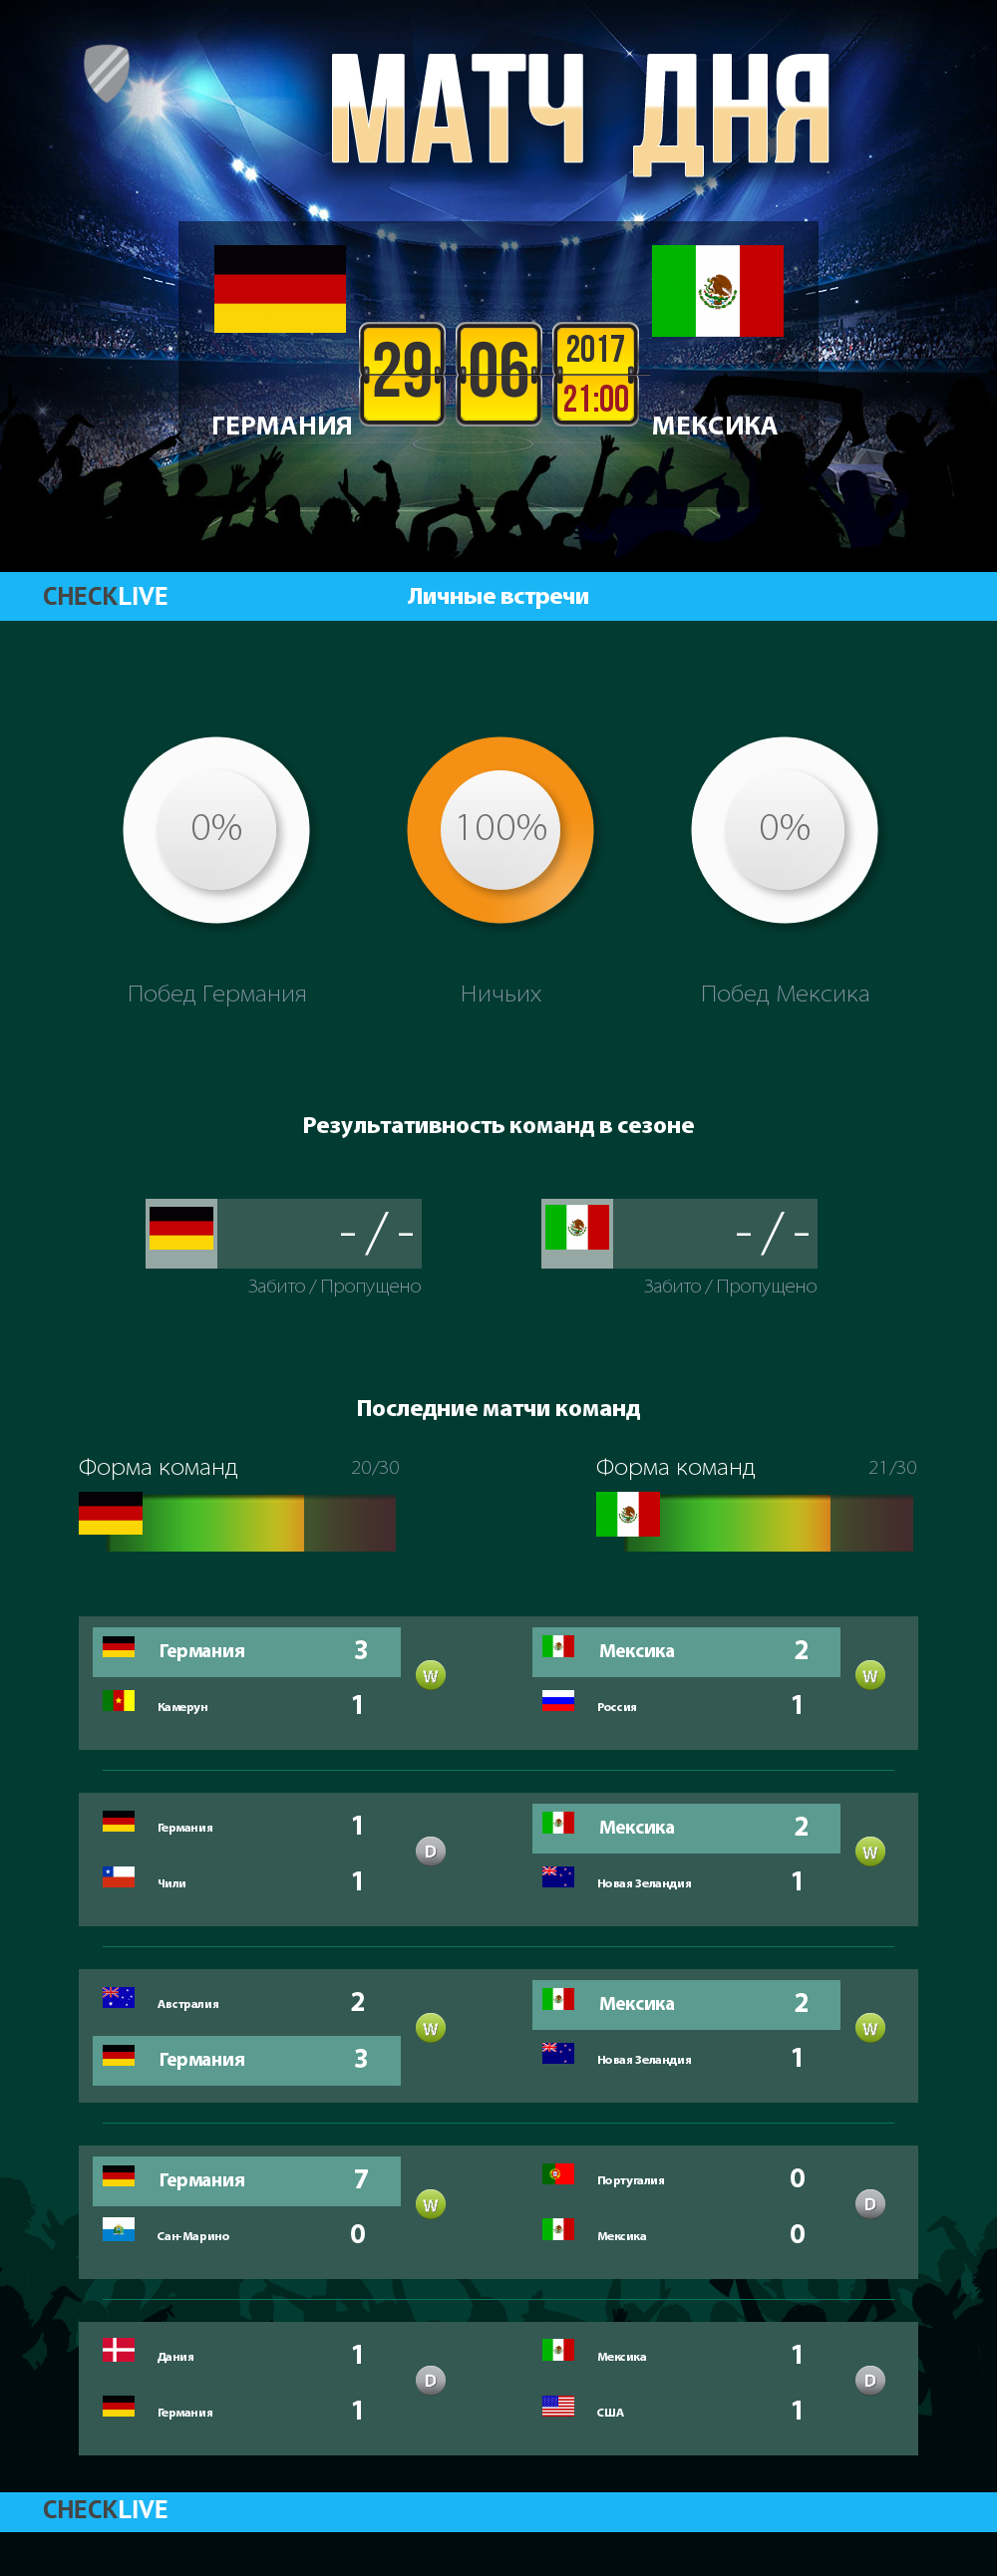 Инфографика Германия и Мексика матч дня 29.06.2017